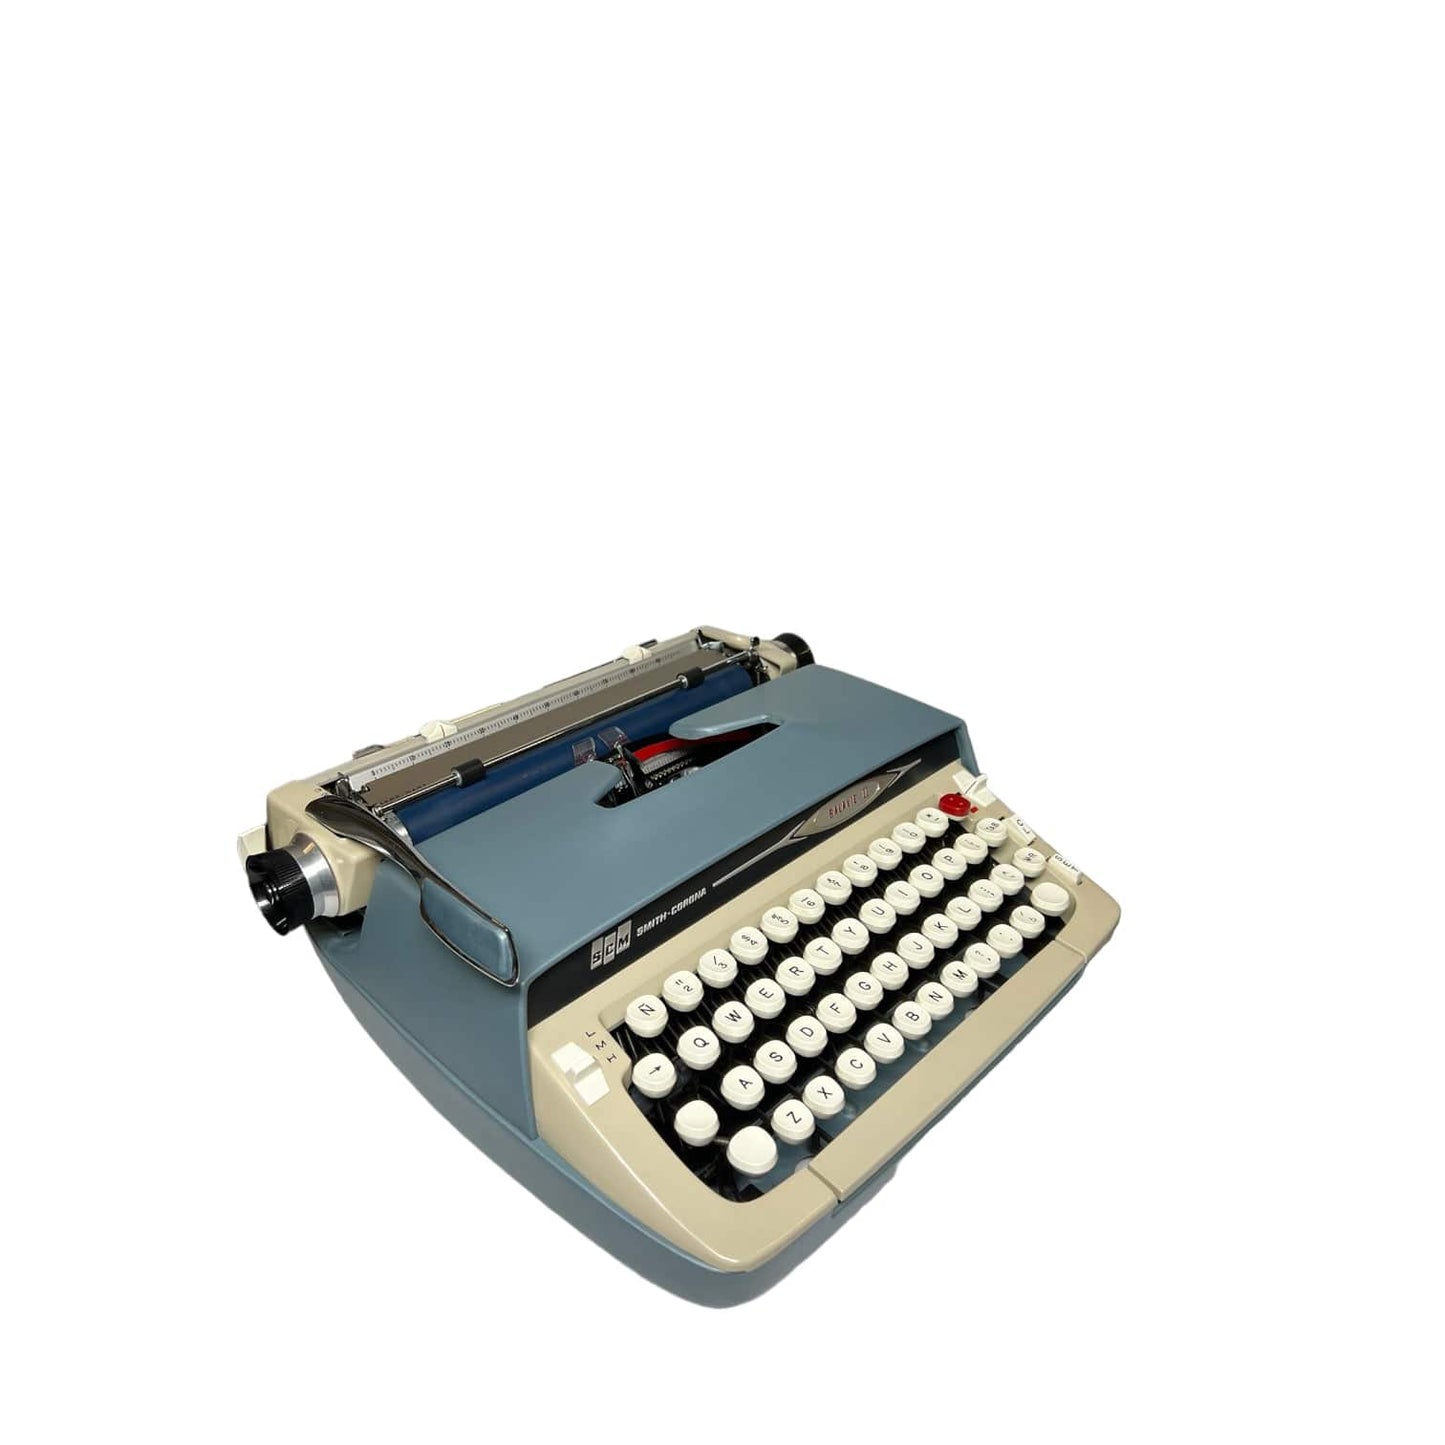 Toronto Typewriters Portable Typewriter Smith Corona Galaxie 2 Typewriter